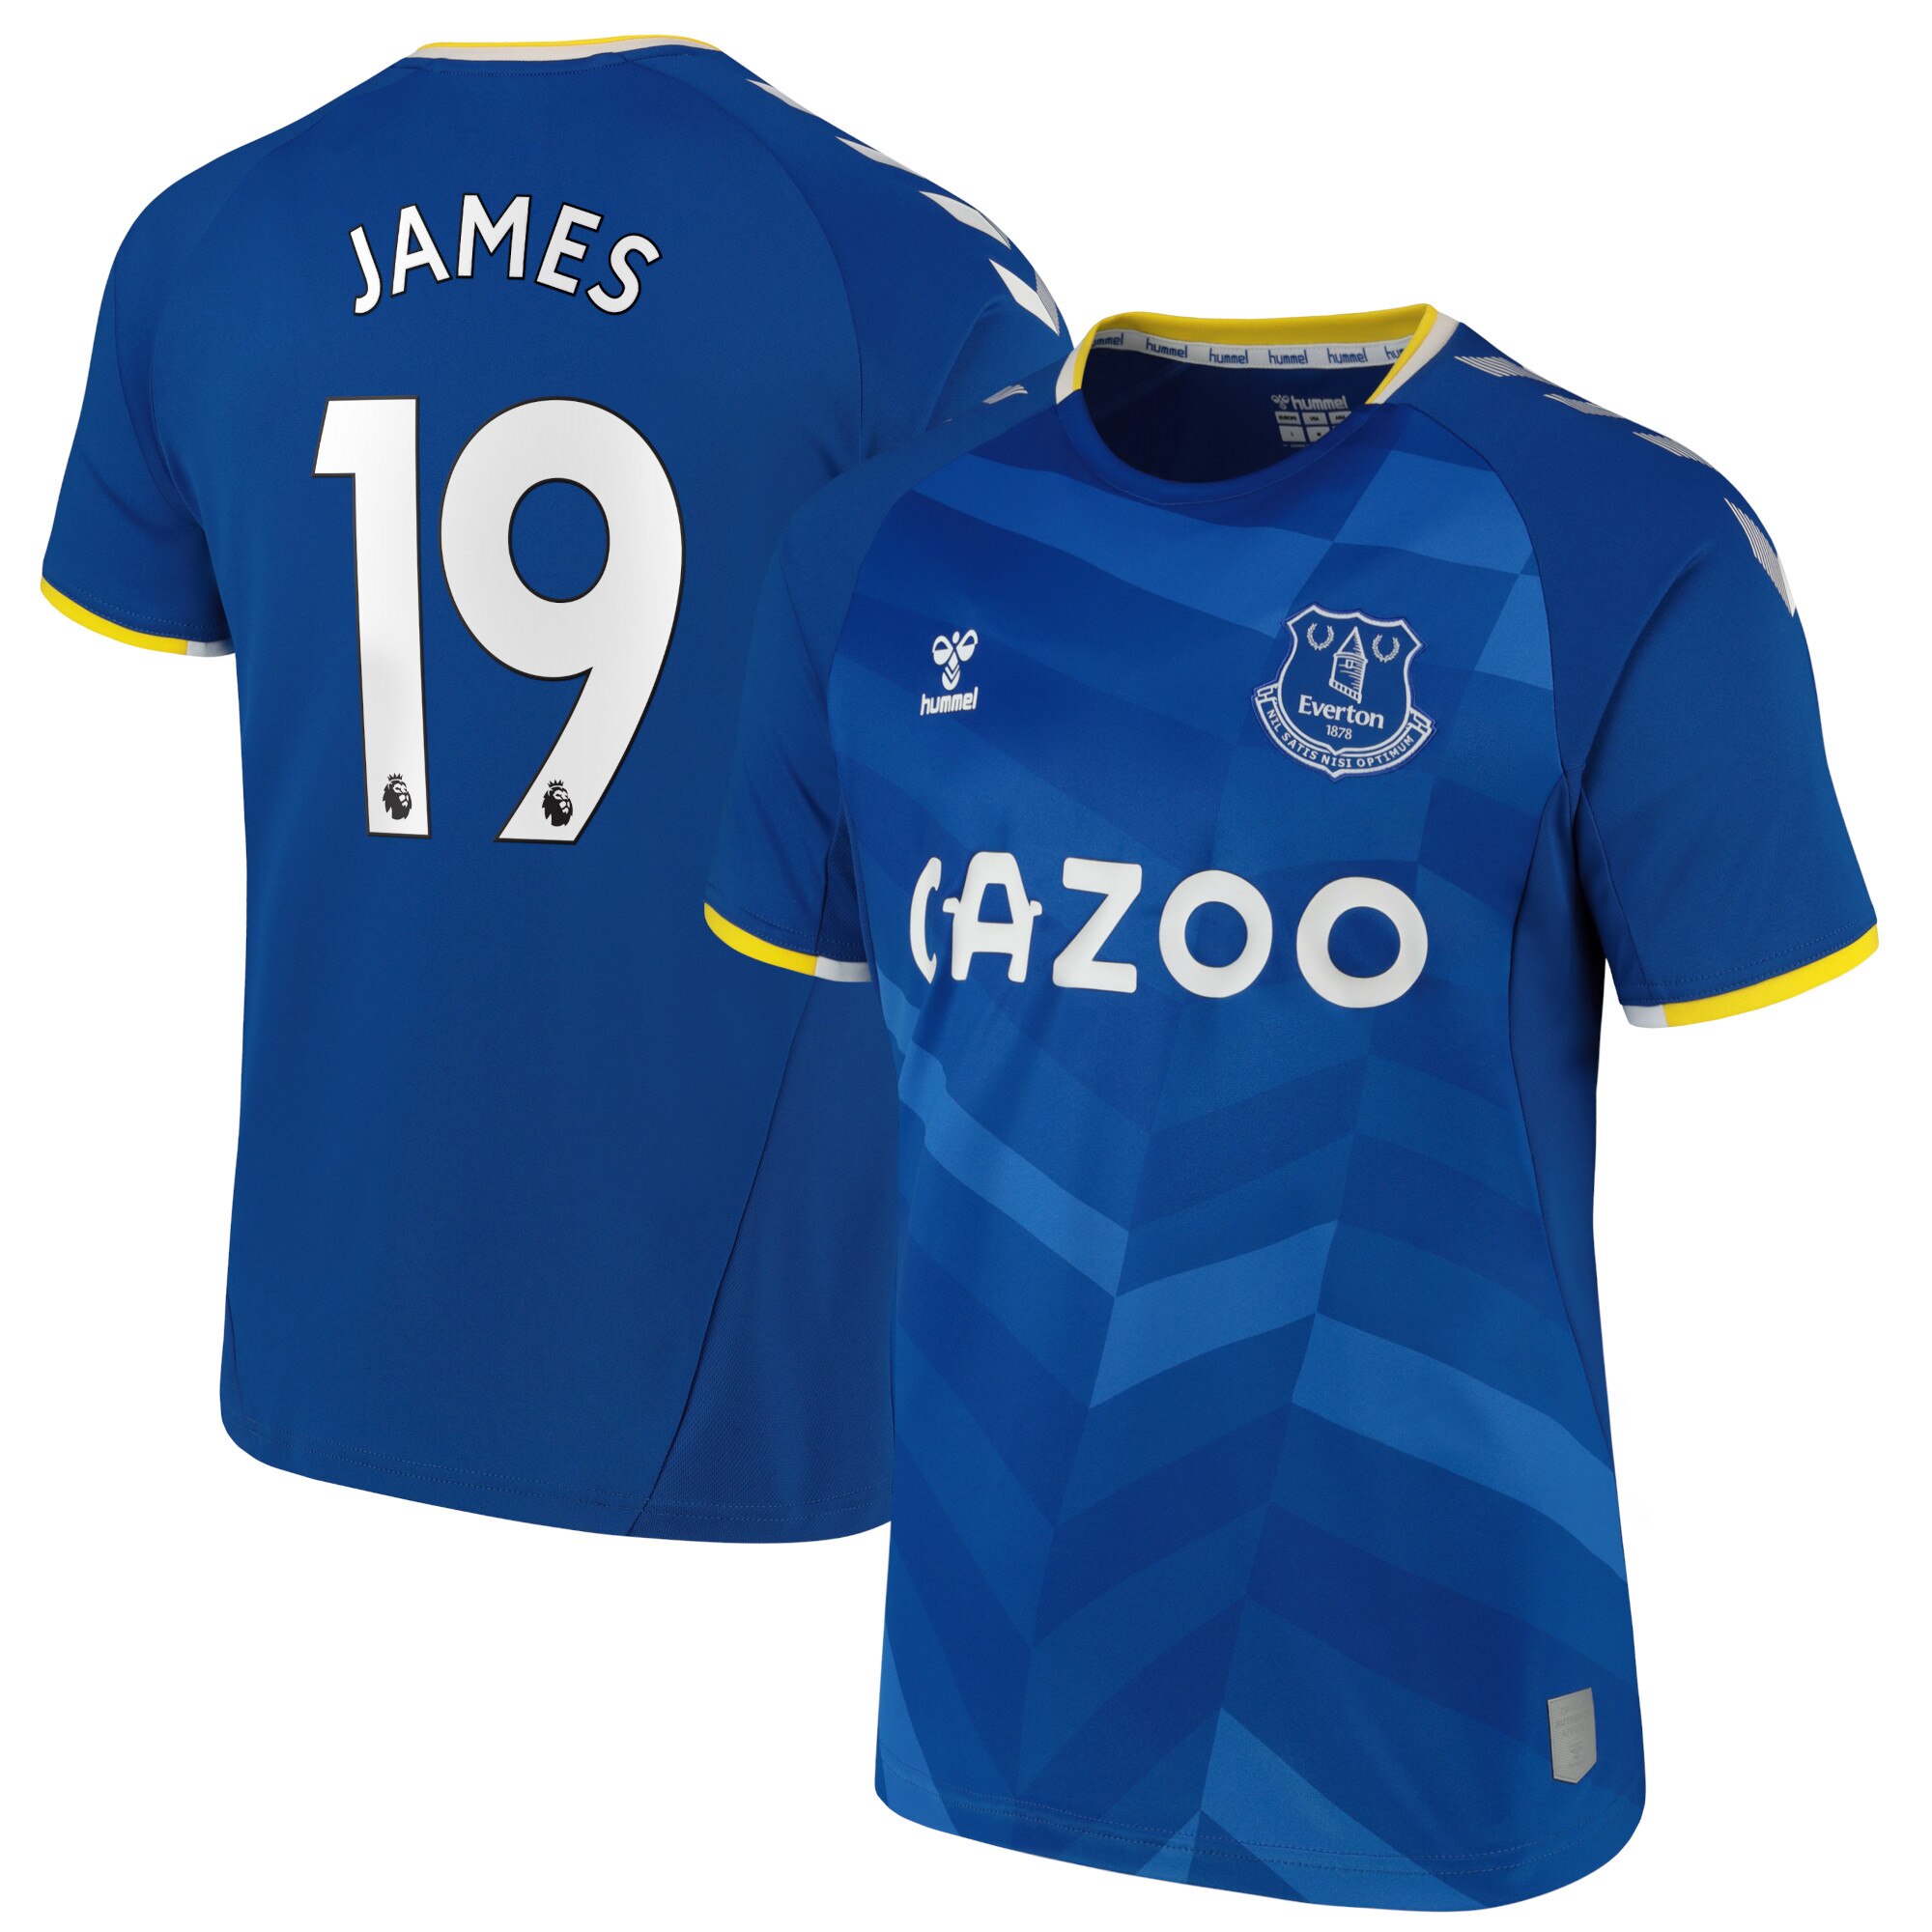 Everton Home Shirt - 2021-22 with James 19 printing